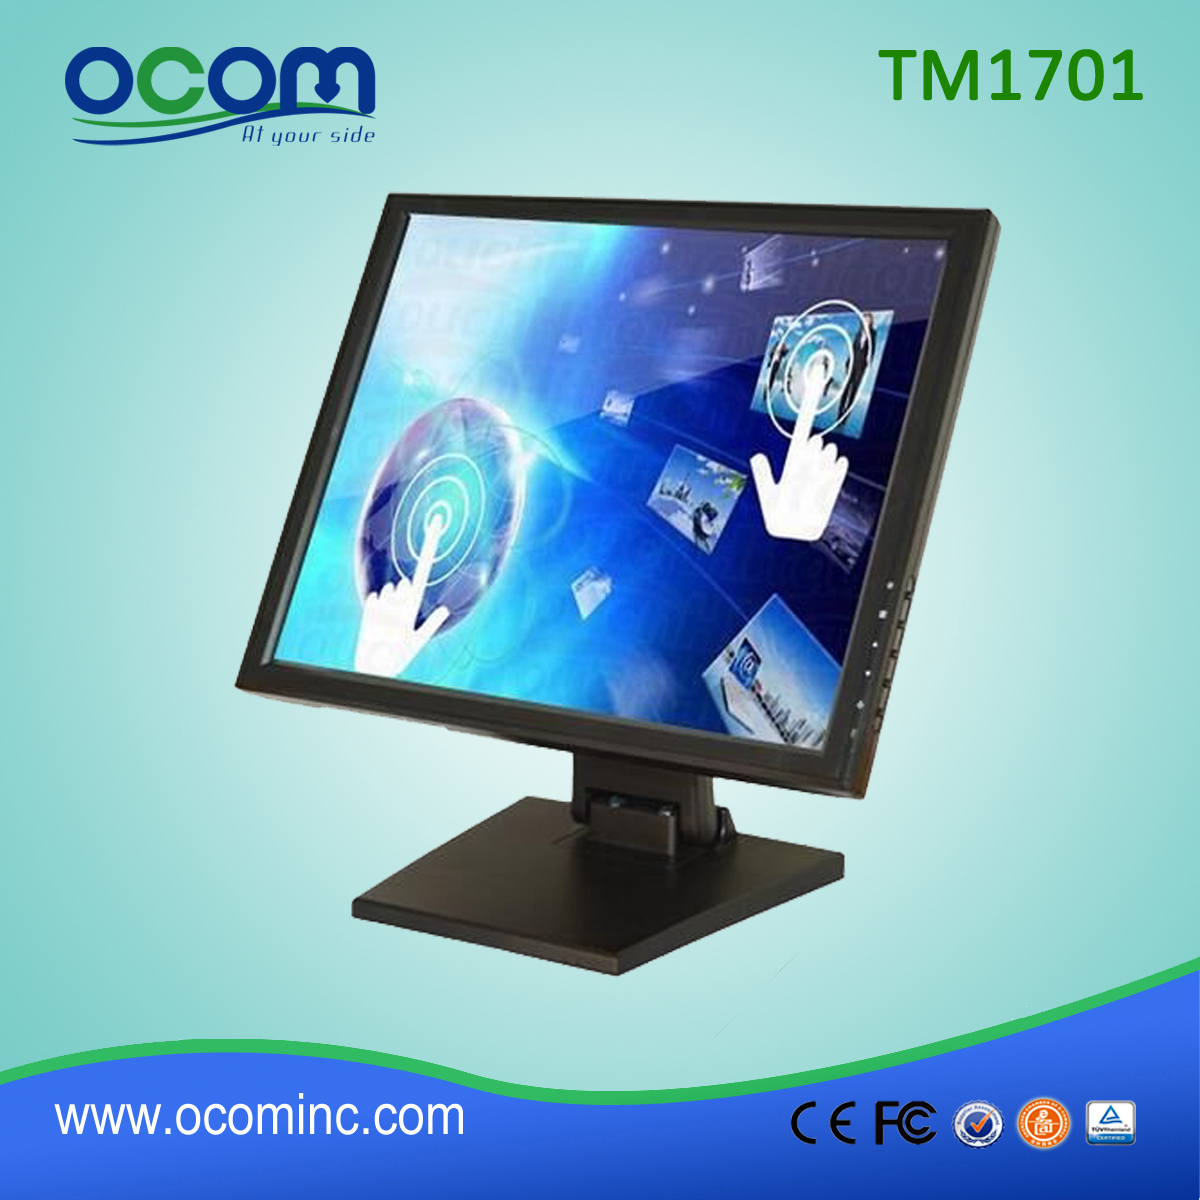 Οθόνη TM1701 Ευέλικτη POS συστήματος αφής LCD